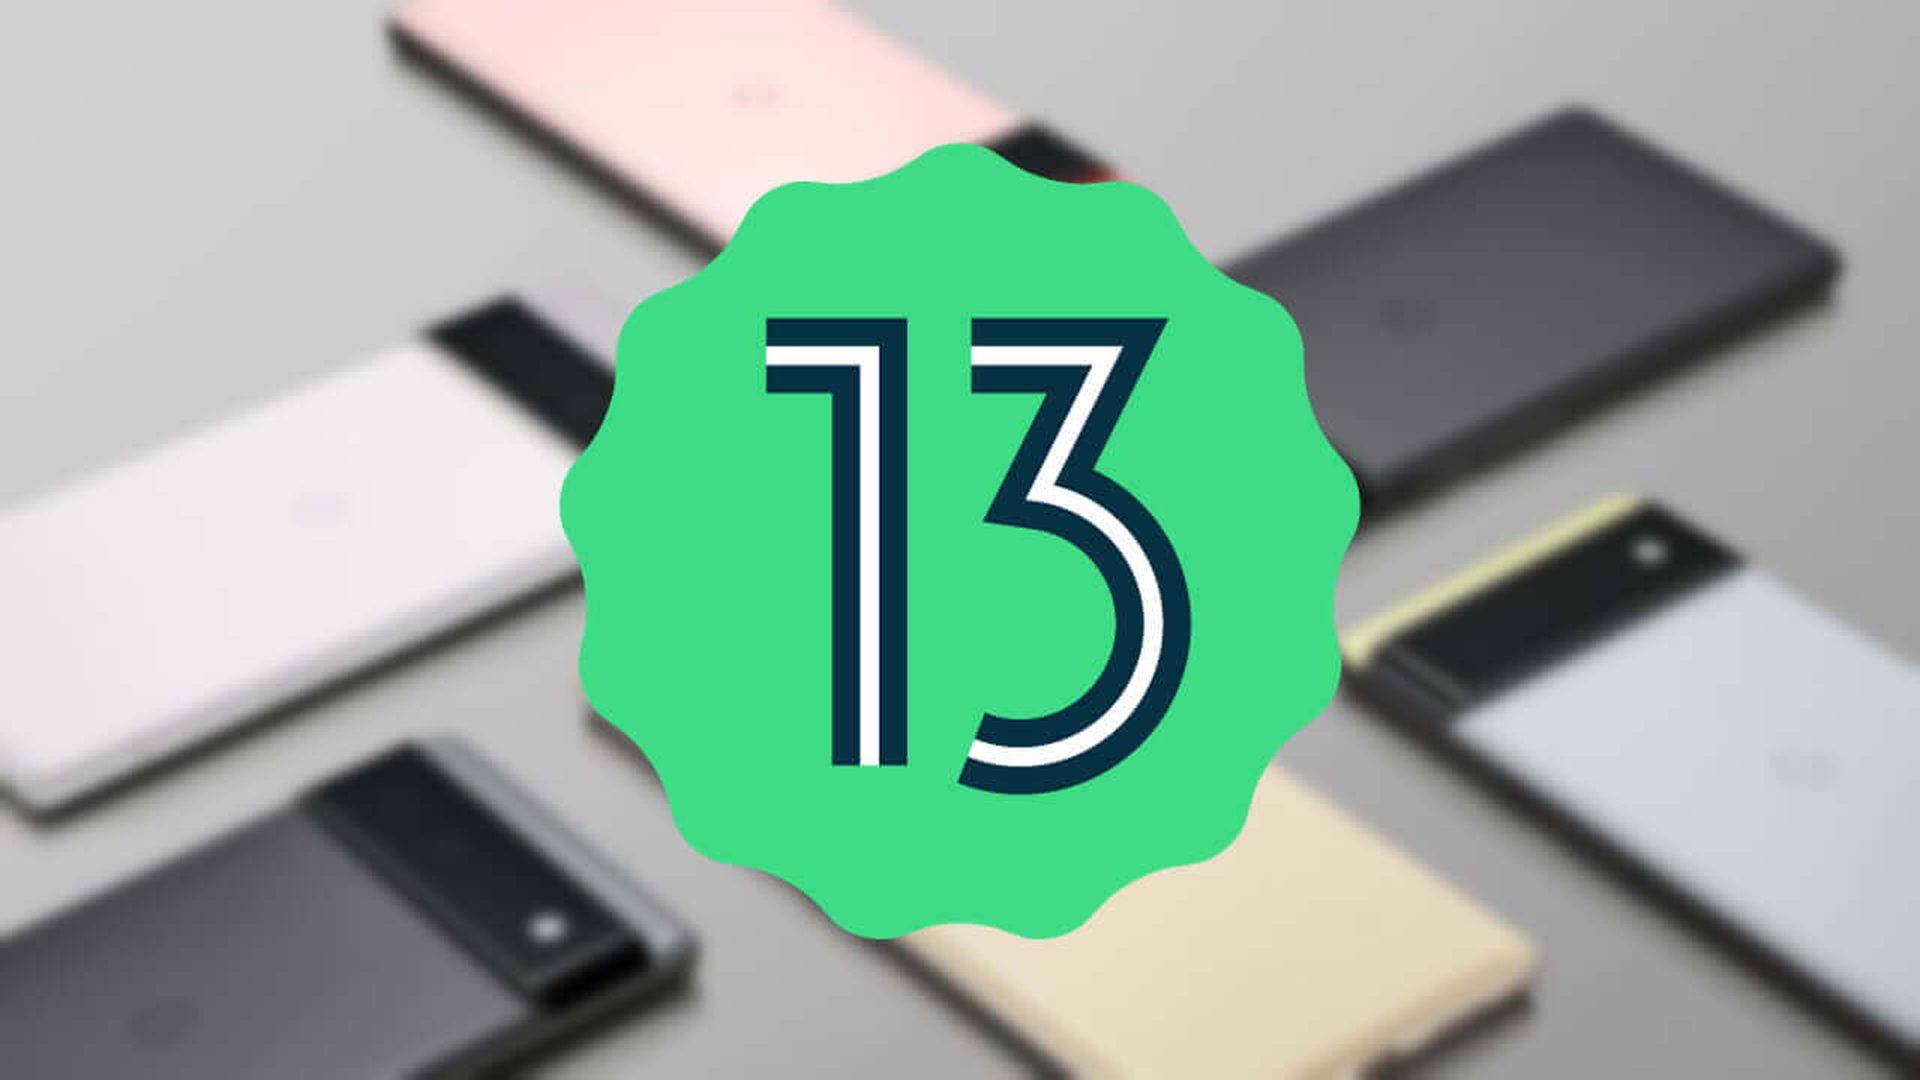 Вышла бета-версия Android 13: новые функции, поддерживаемые устройства и многое другое